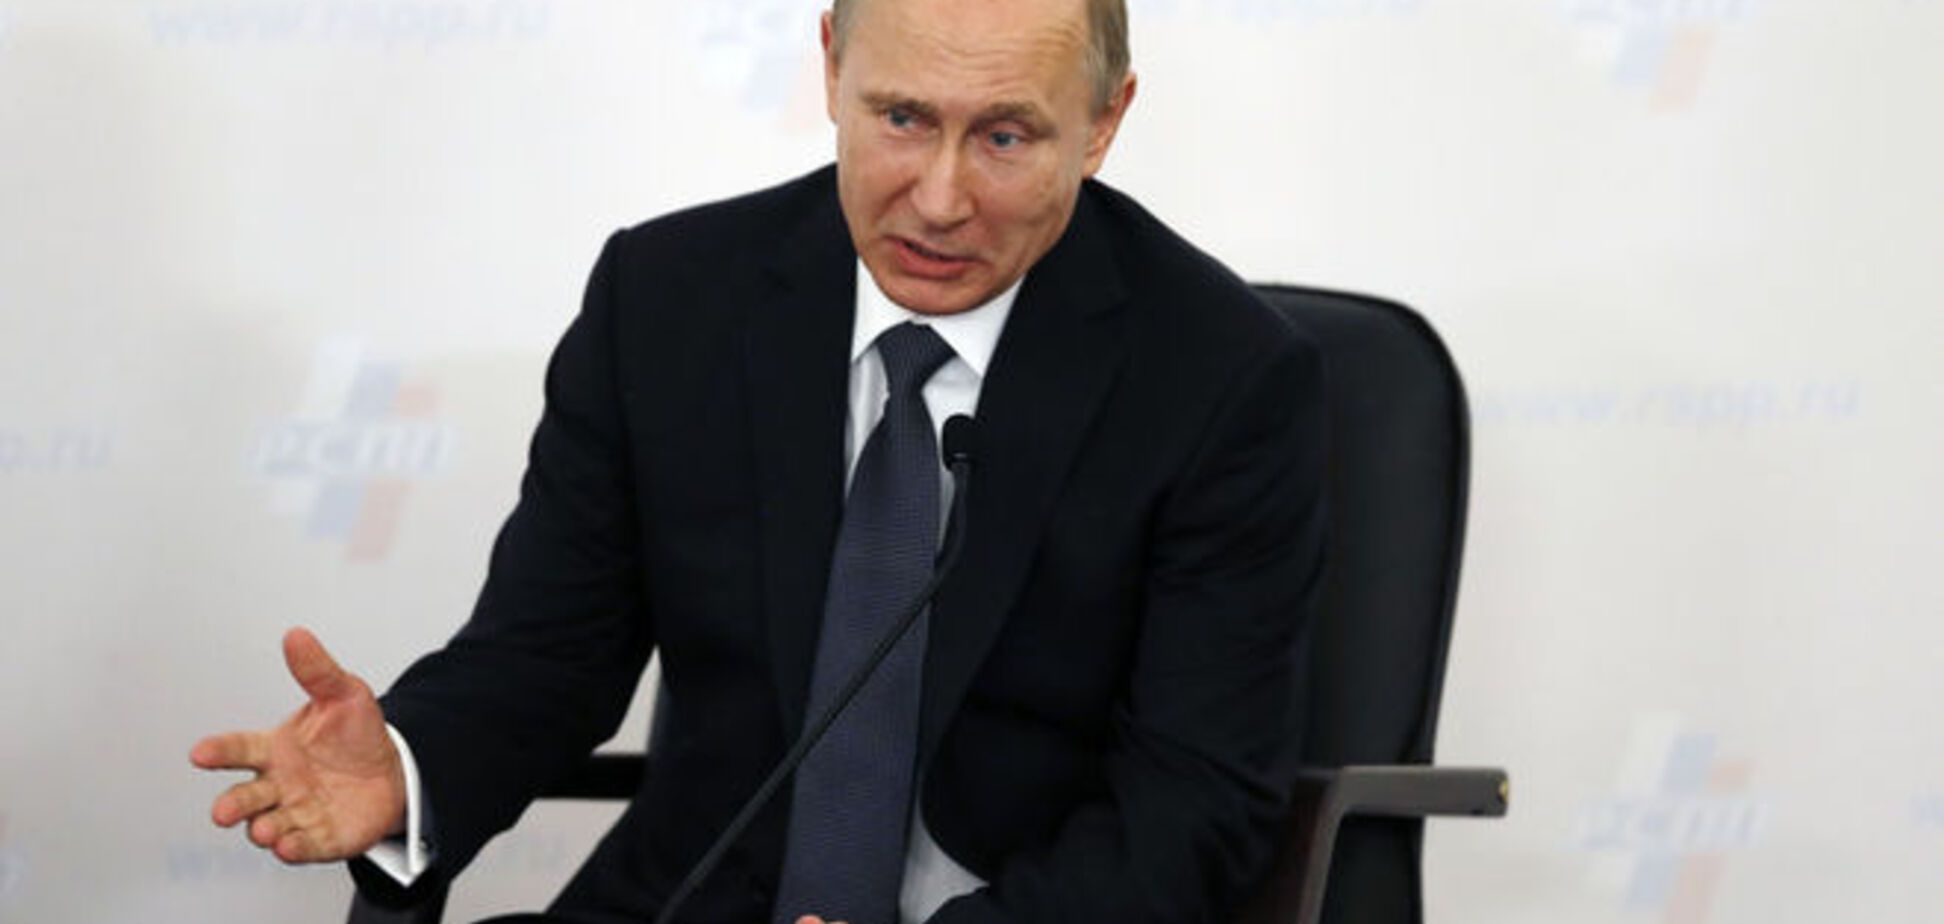 'Крымнаш' и танки наши быстры: рейтинг Путина достиг максимума с 2008 года